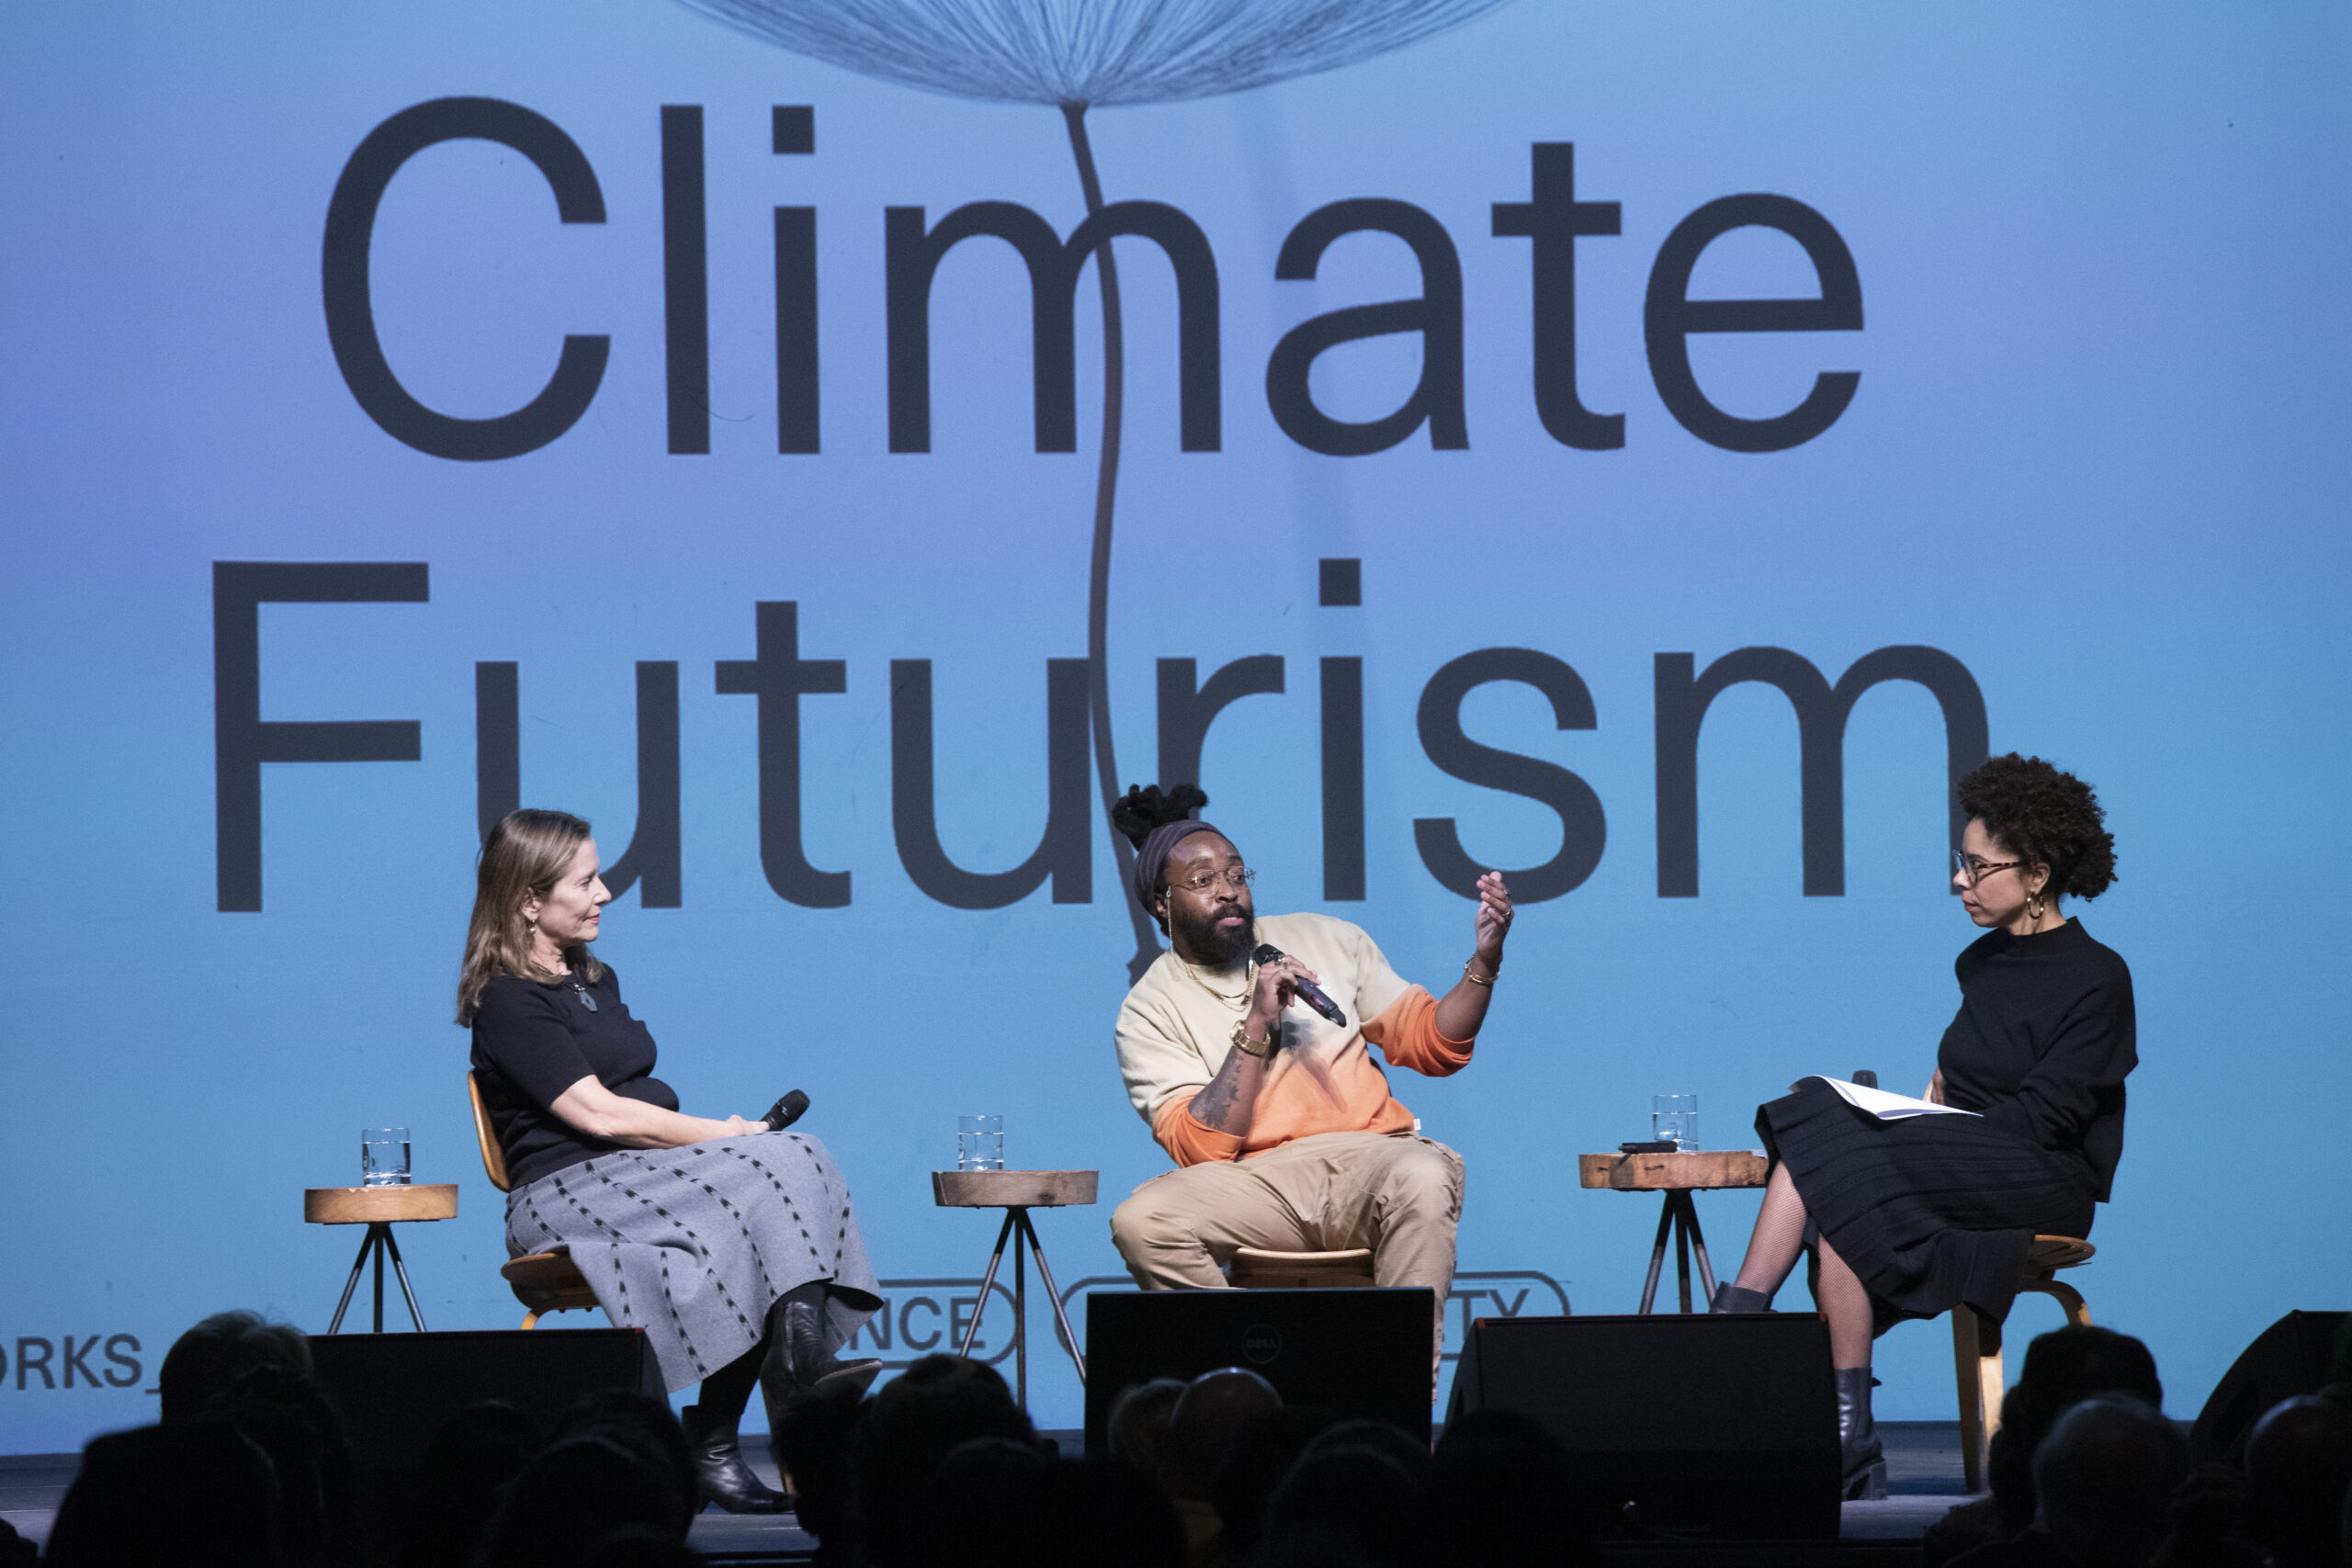 Artist Lek Jeyifous speaks at Climate Futurism panel.